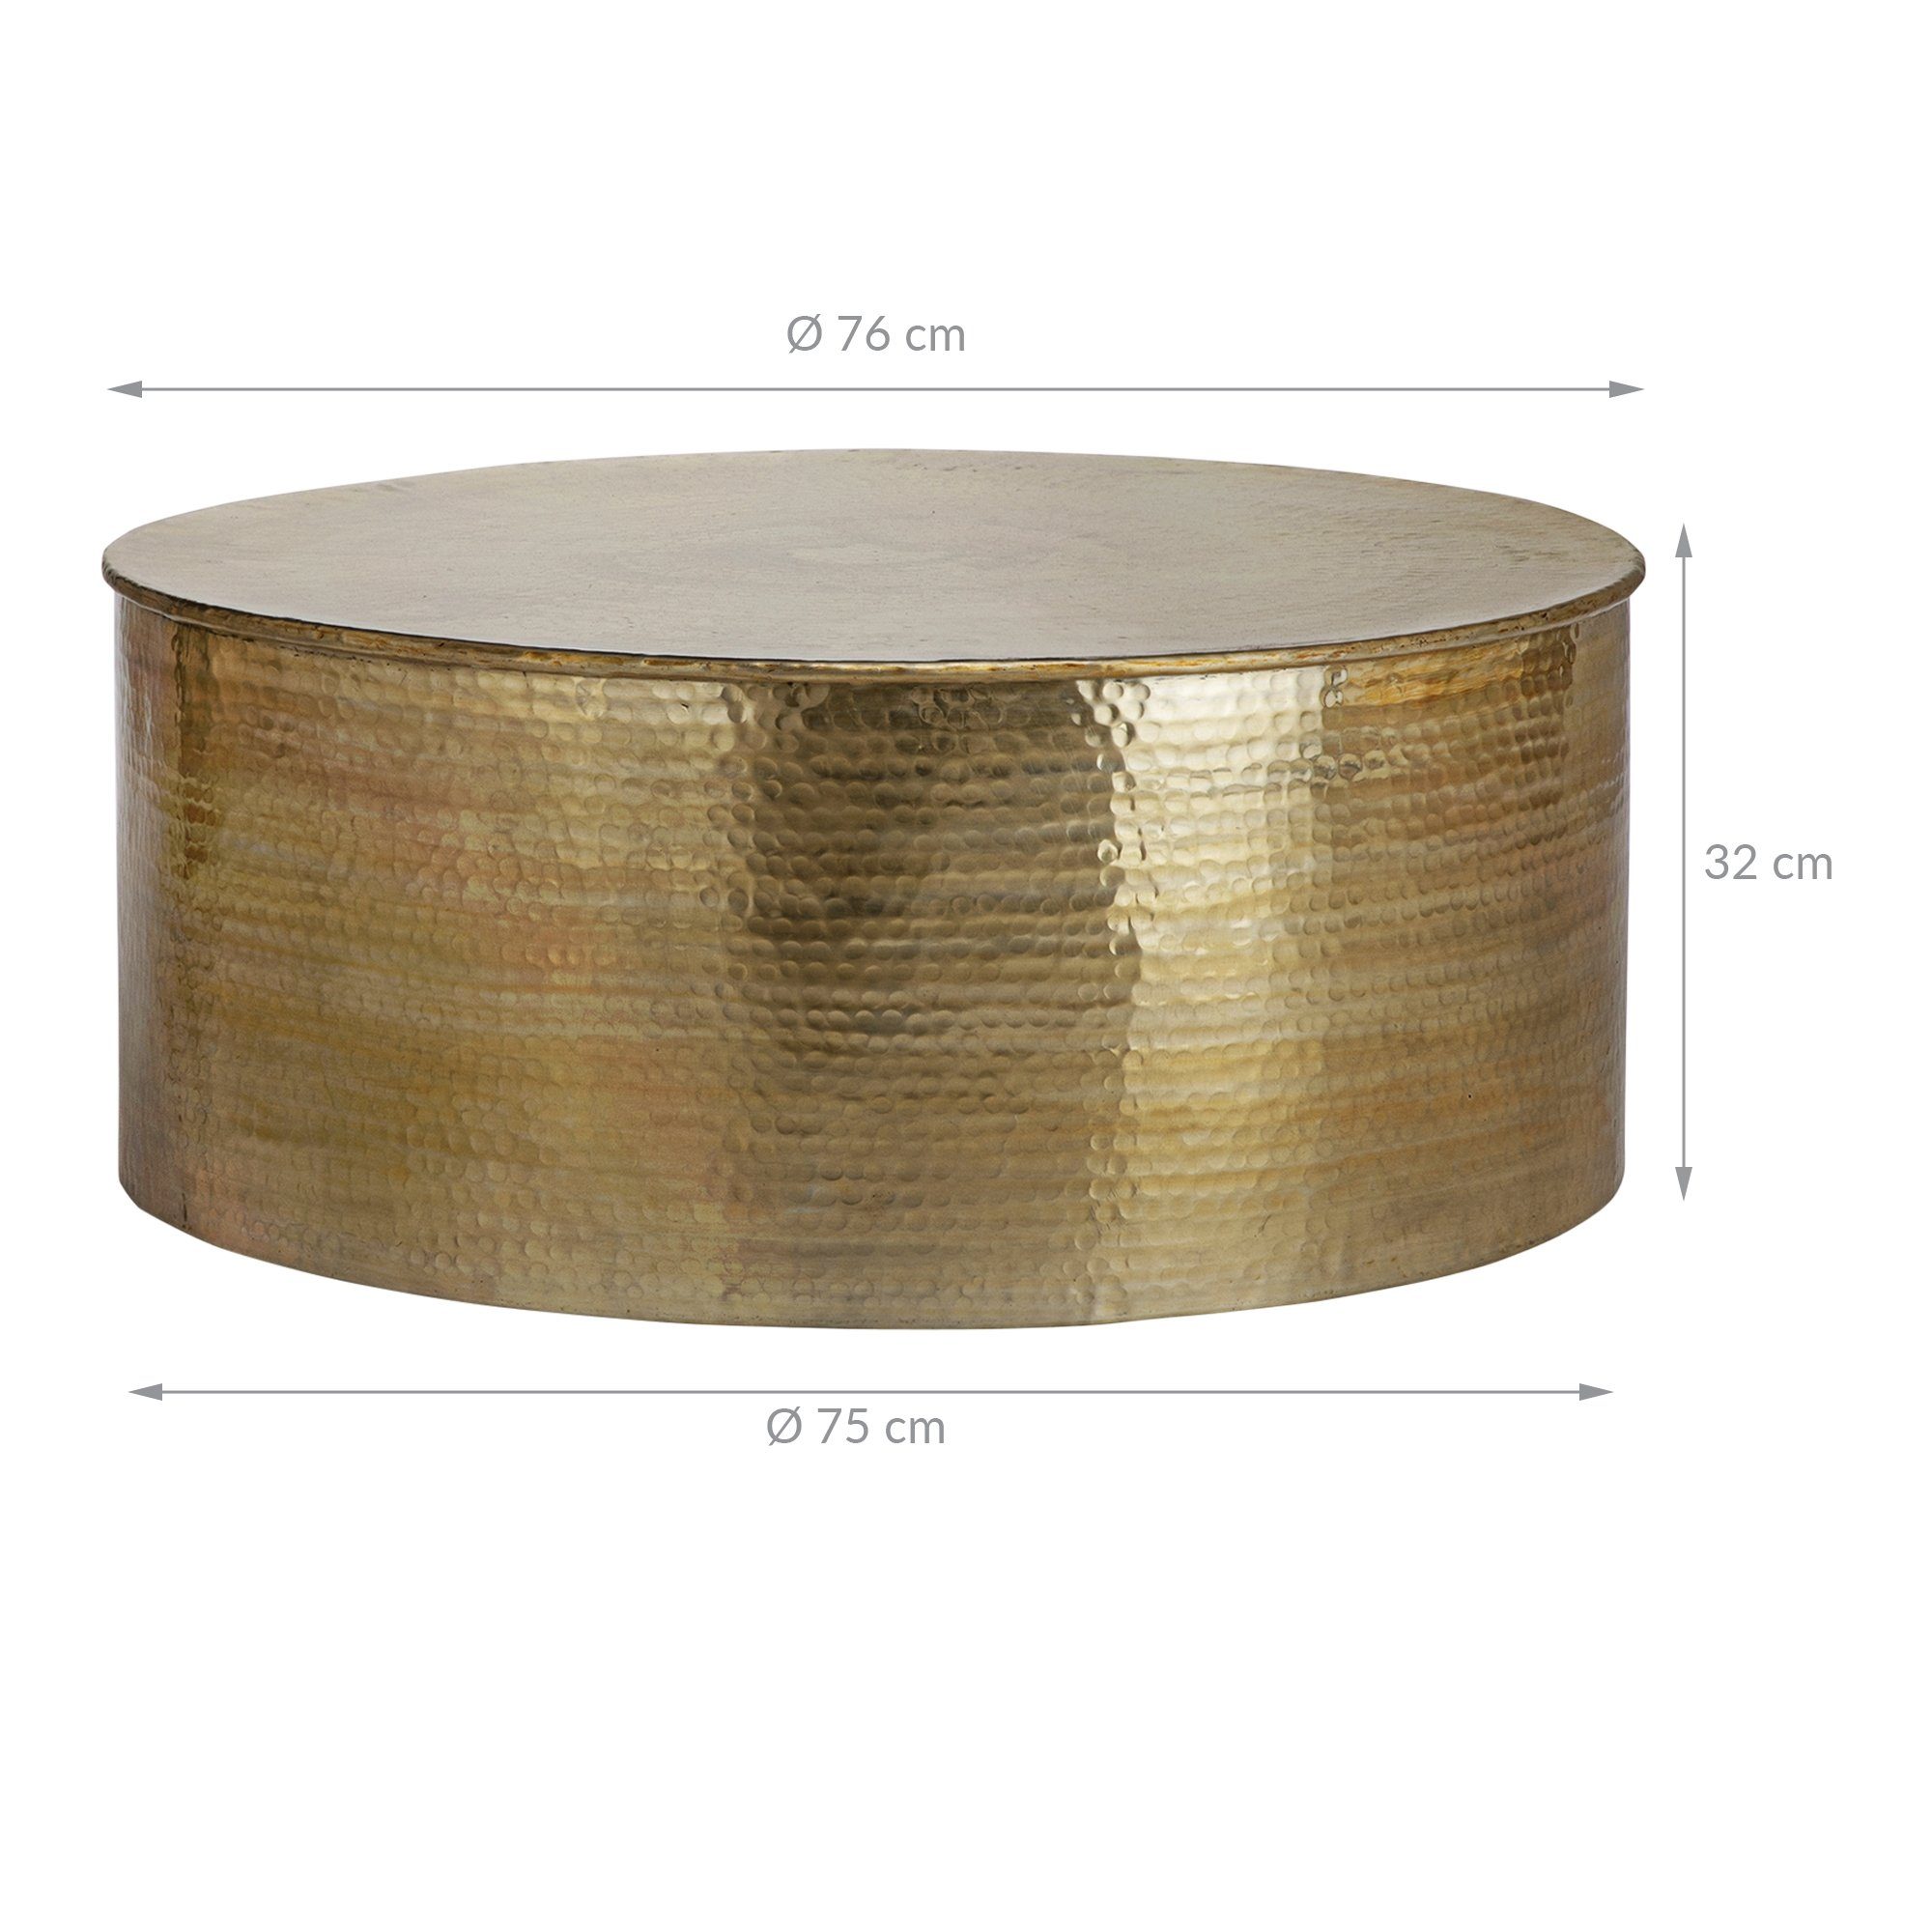 Aluminium-Legierung aus x Couchtisch 76 Ø 32 WOMO-DESIGN gold, rund, cm,